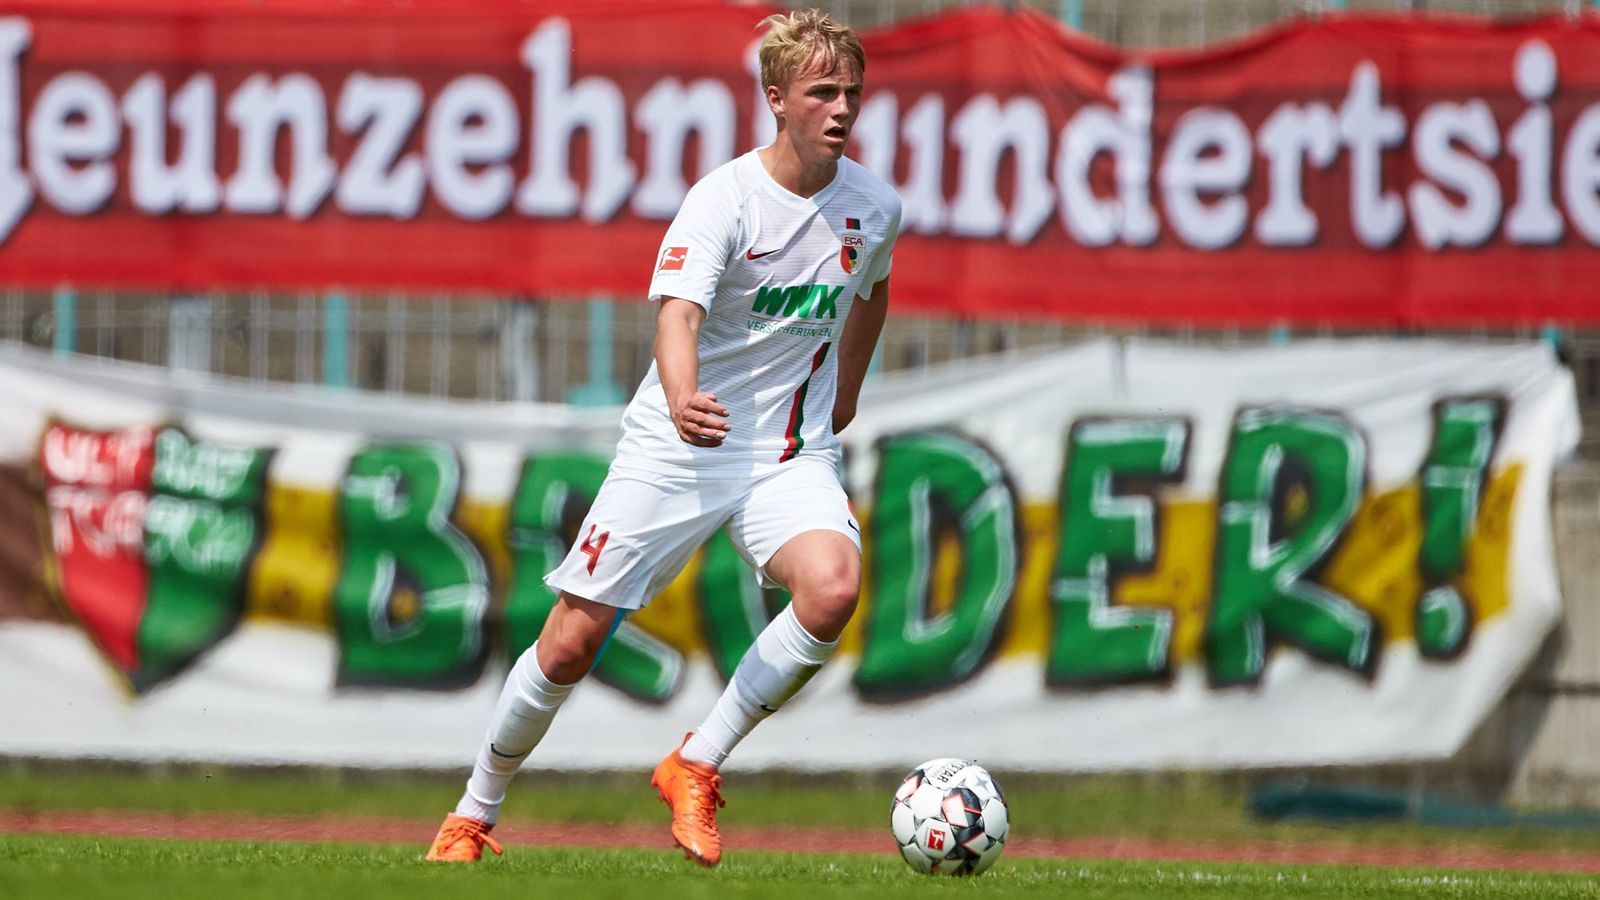 
                <strong>Mittelfeld: Felix Götze</strong><br>
                Der jüngere Bruder von Mario Götze wechselte im Sommer 2018 vom FC Bayern München zum FC Augsburg, wo er sechs Bundesliga-Einsätze hatte. Es wären deutlich mehr geworden, hätte die Hüfte ihn nicht um einen großen Teil der Saison gebracht. Unabhängig davon gilt der 21-Jährige, der zwei Länderspiele für die U20-Nationalmannschaft bestritt, als großes Talent und hat im Mittelfeld ein gutes Defensivverhalten.
              